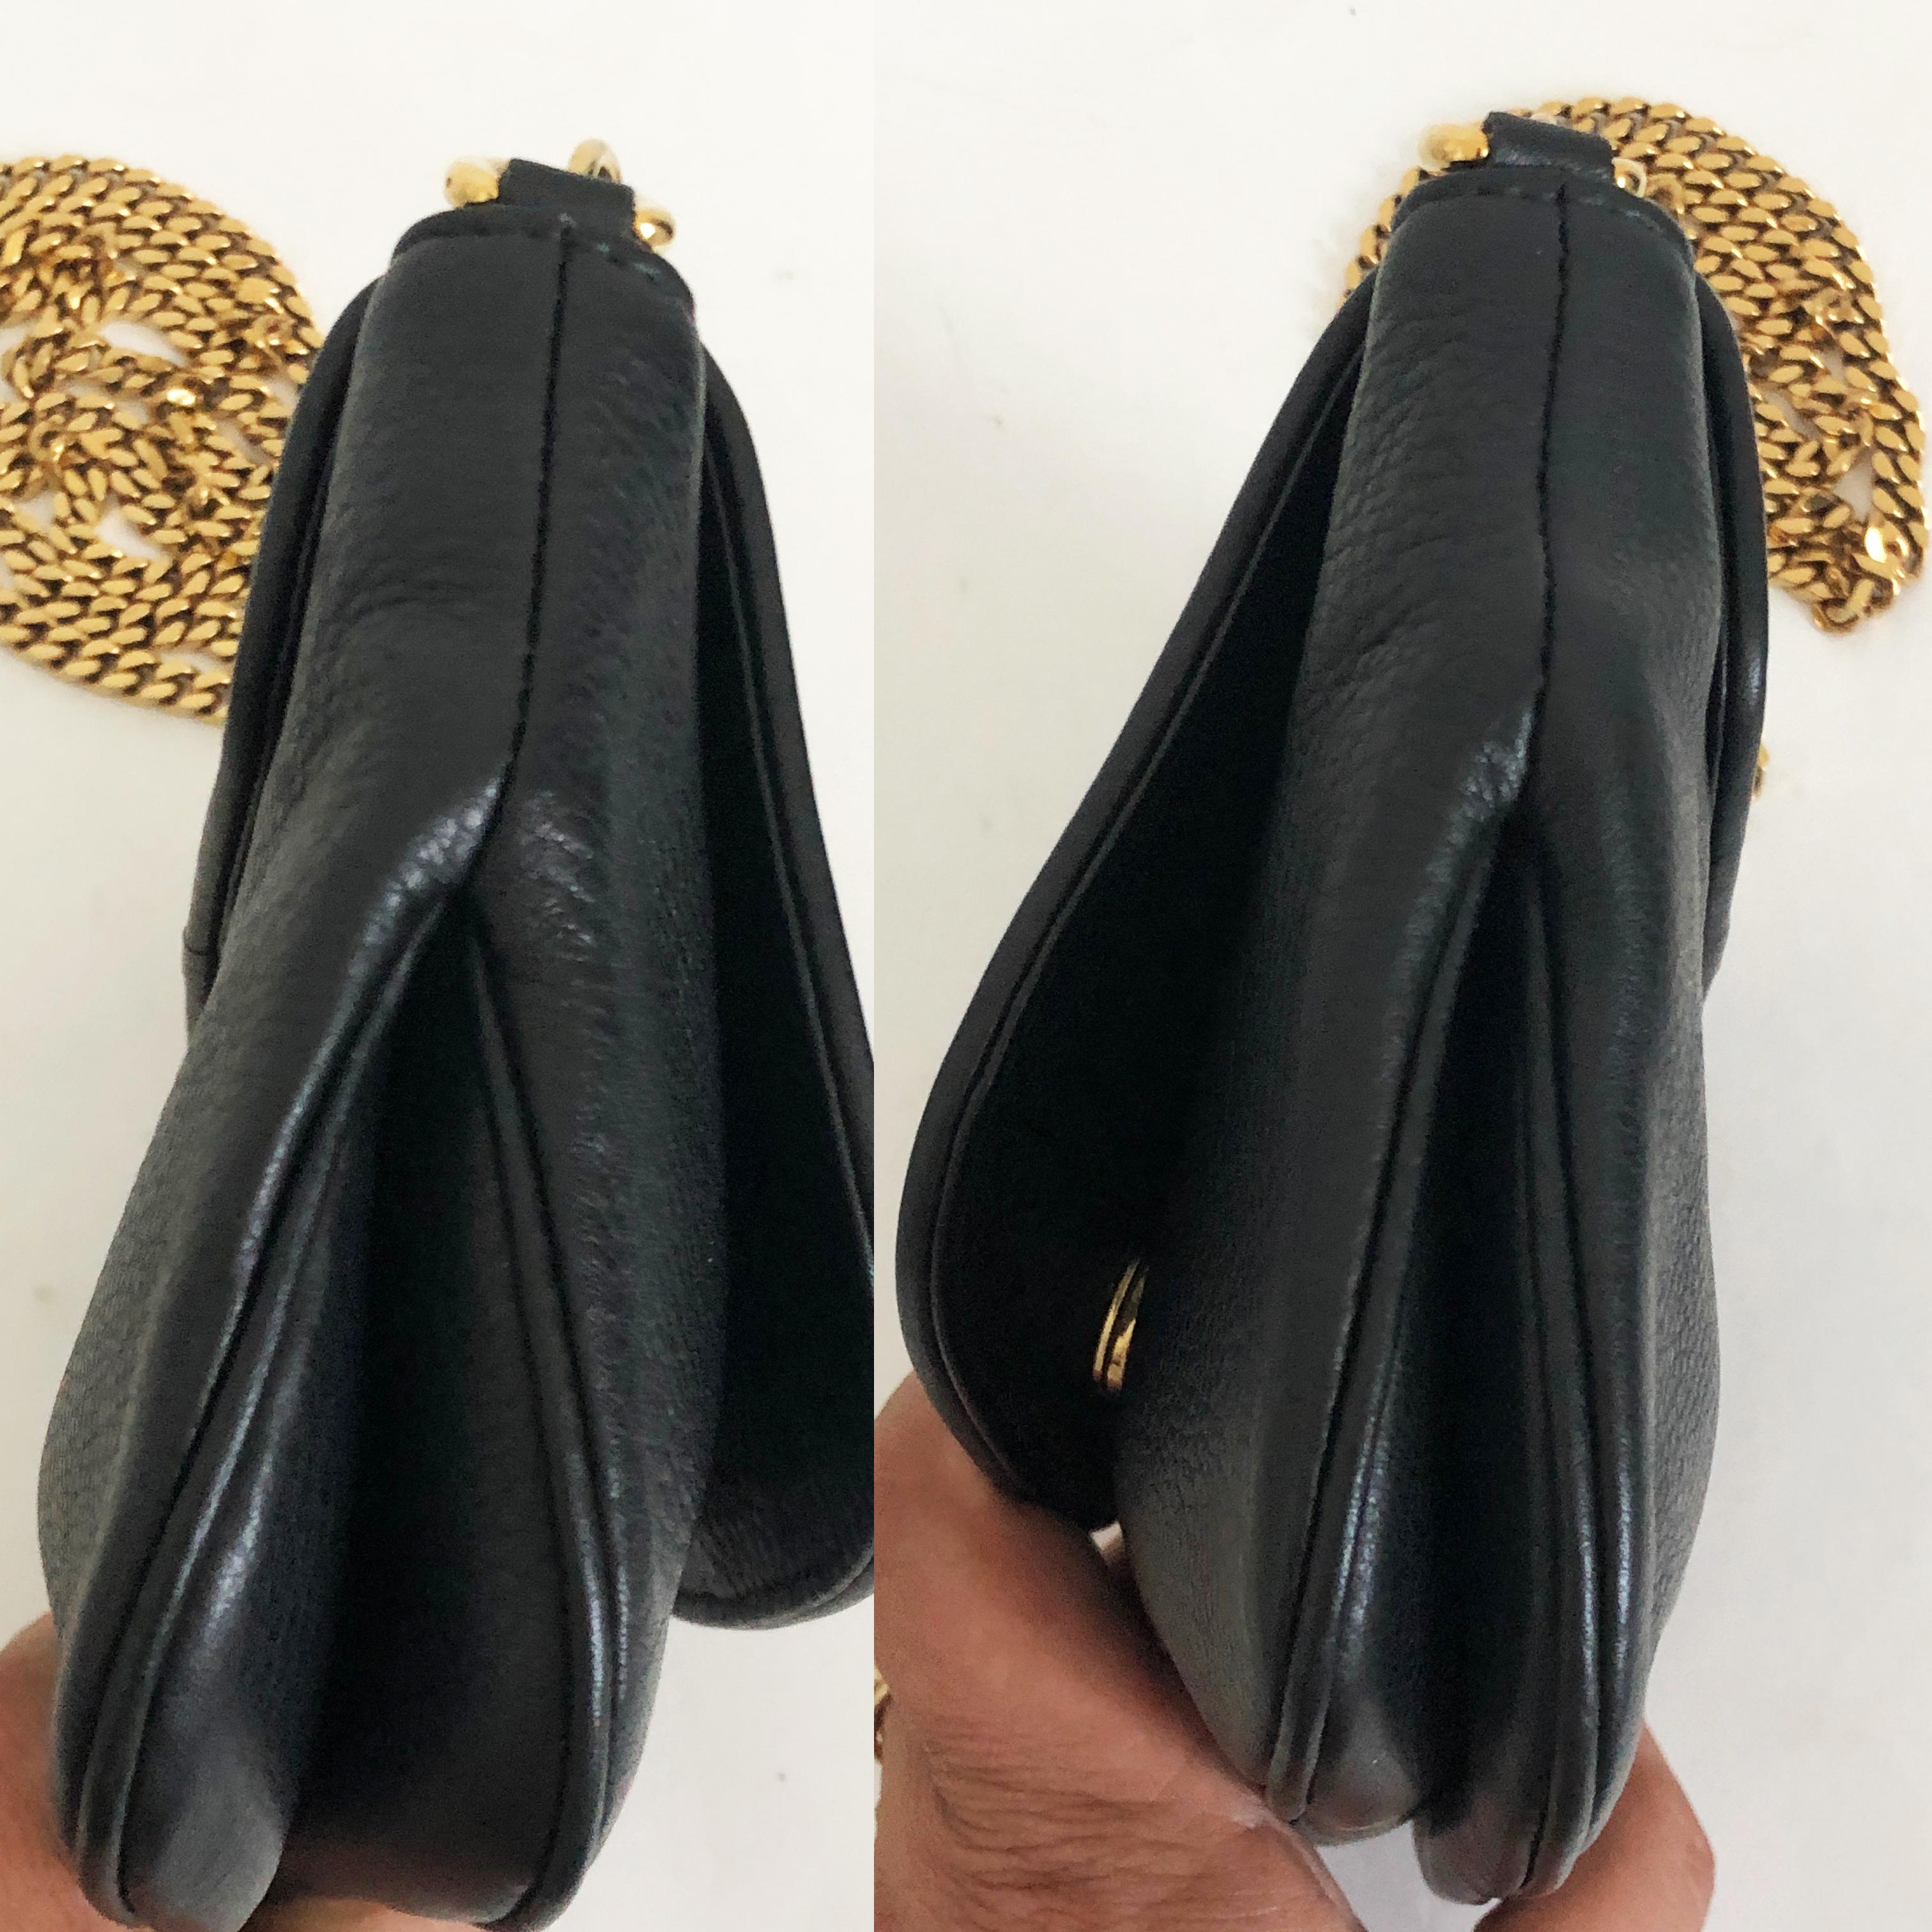 Gucci 1973 Shoulder Bag Black Pebbled Leather Messenger Bag NWOT 1